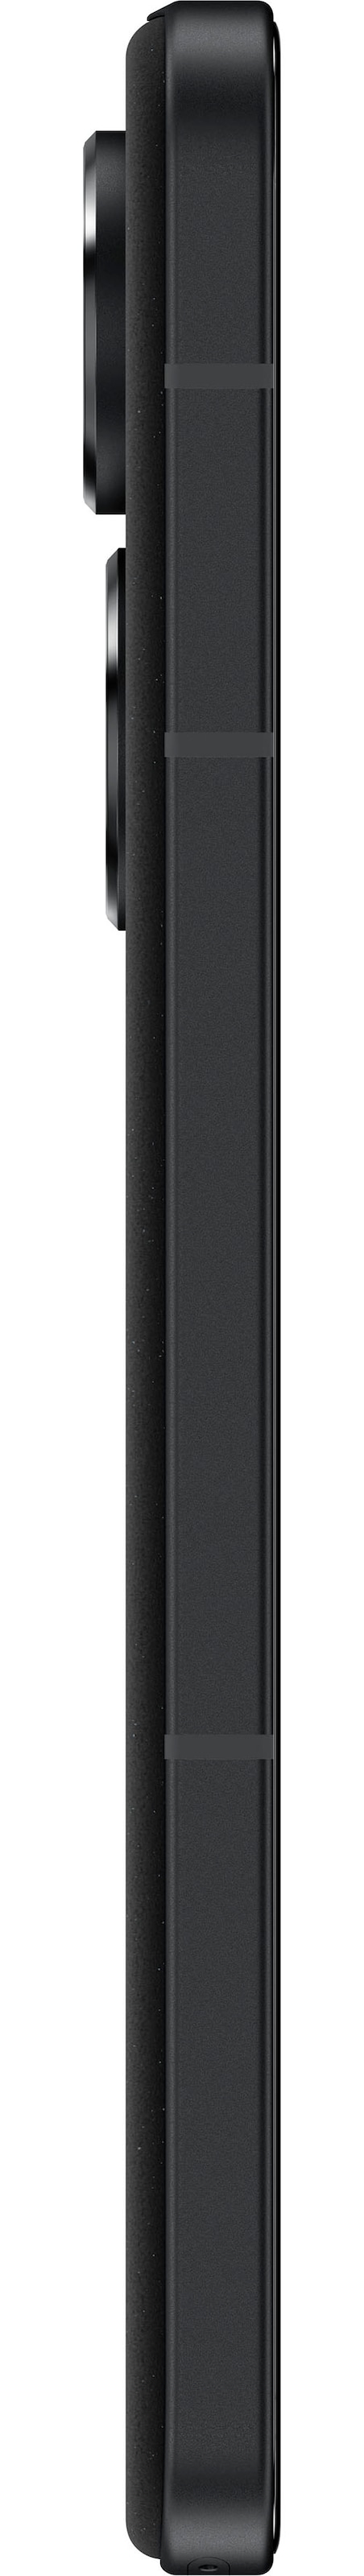 Asus Smartphone »ZENFONE 10«, schwarz, 14,98 cm/5,9 Zoll, 128 GB  Speicherplatz, 50 MP Kamera | BAUR